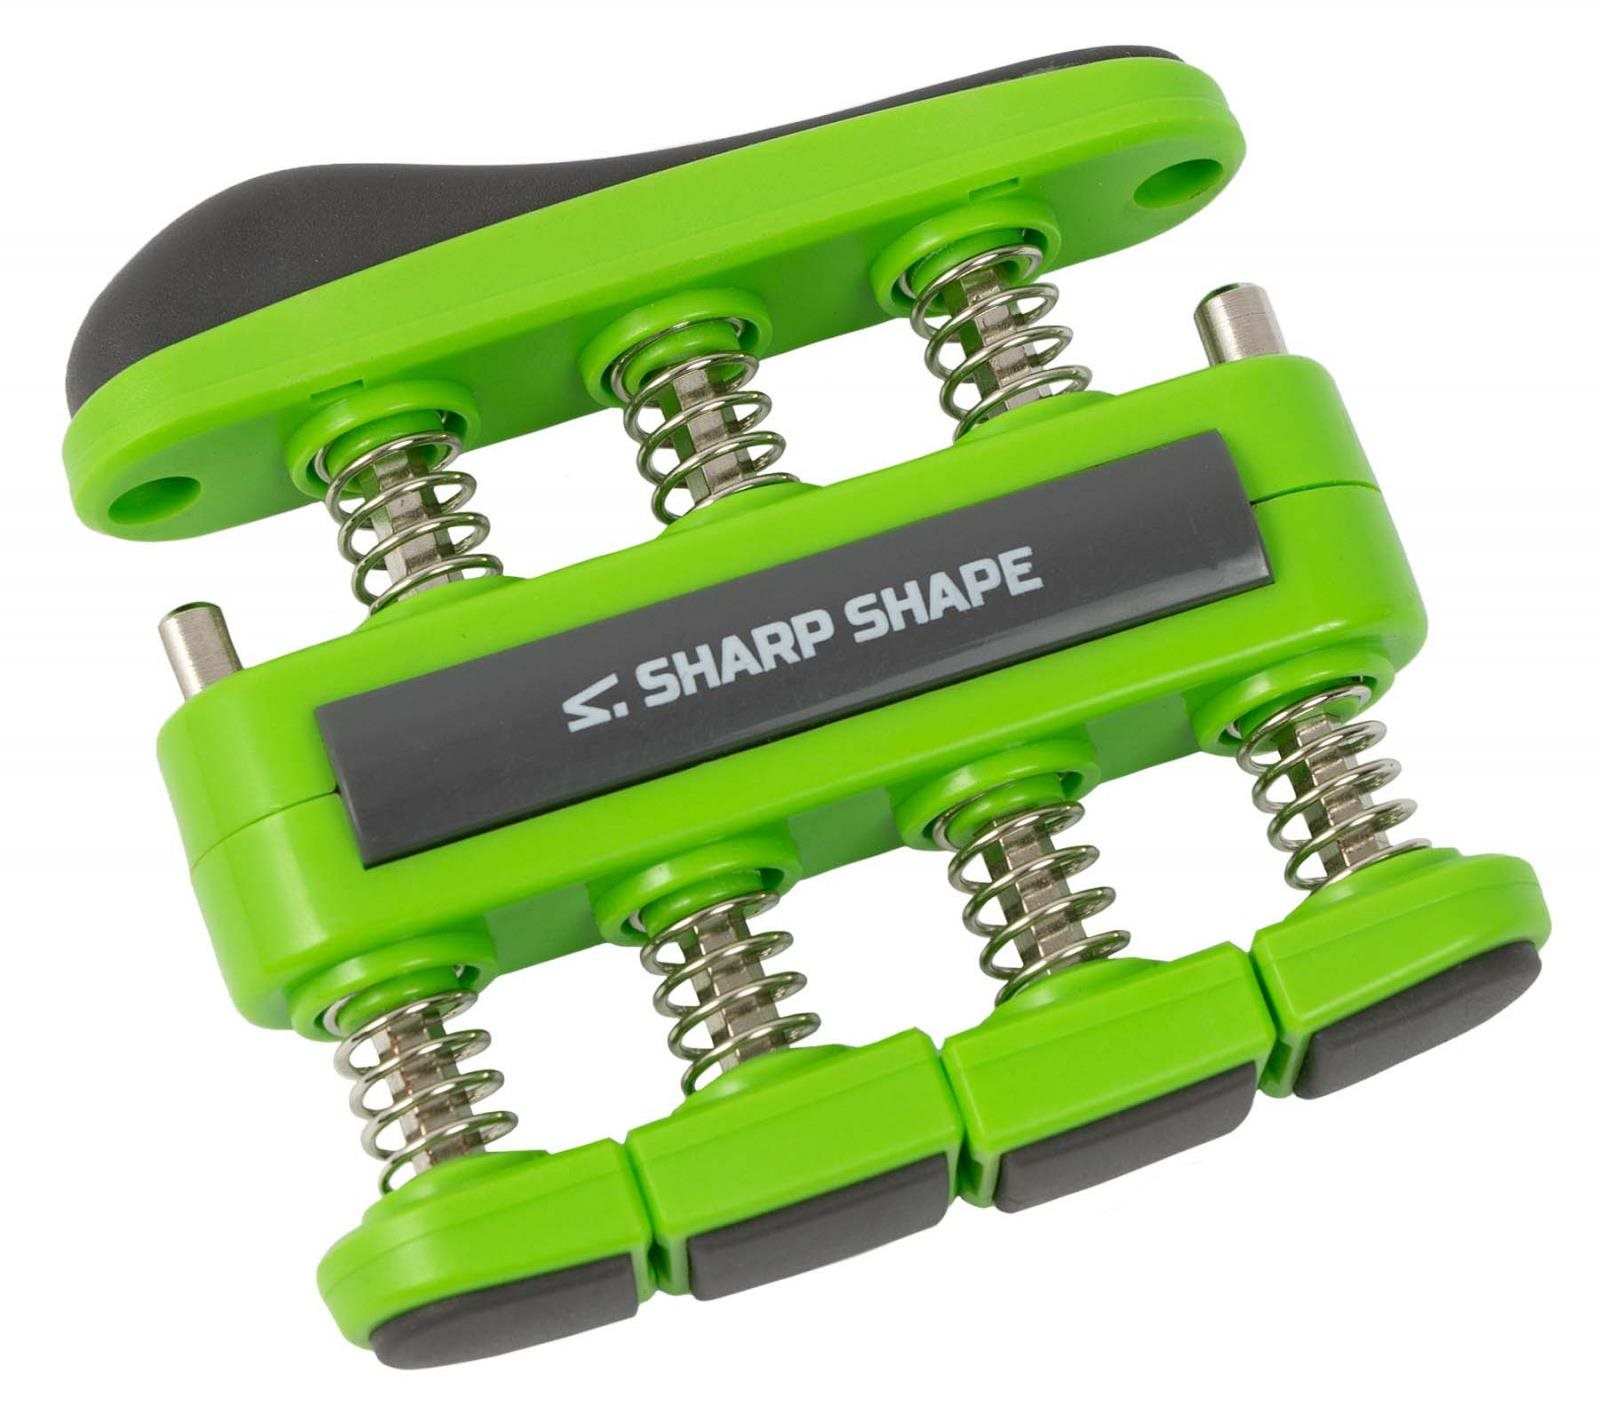 Marokerősítő Sharp Shape marokerősítő zöld